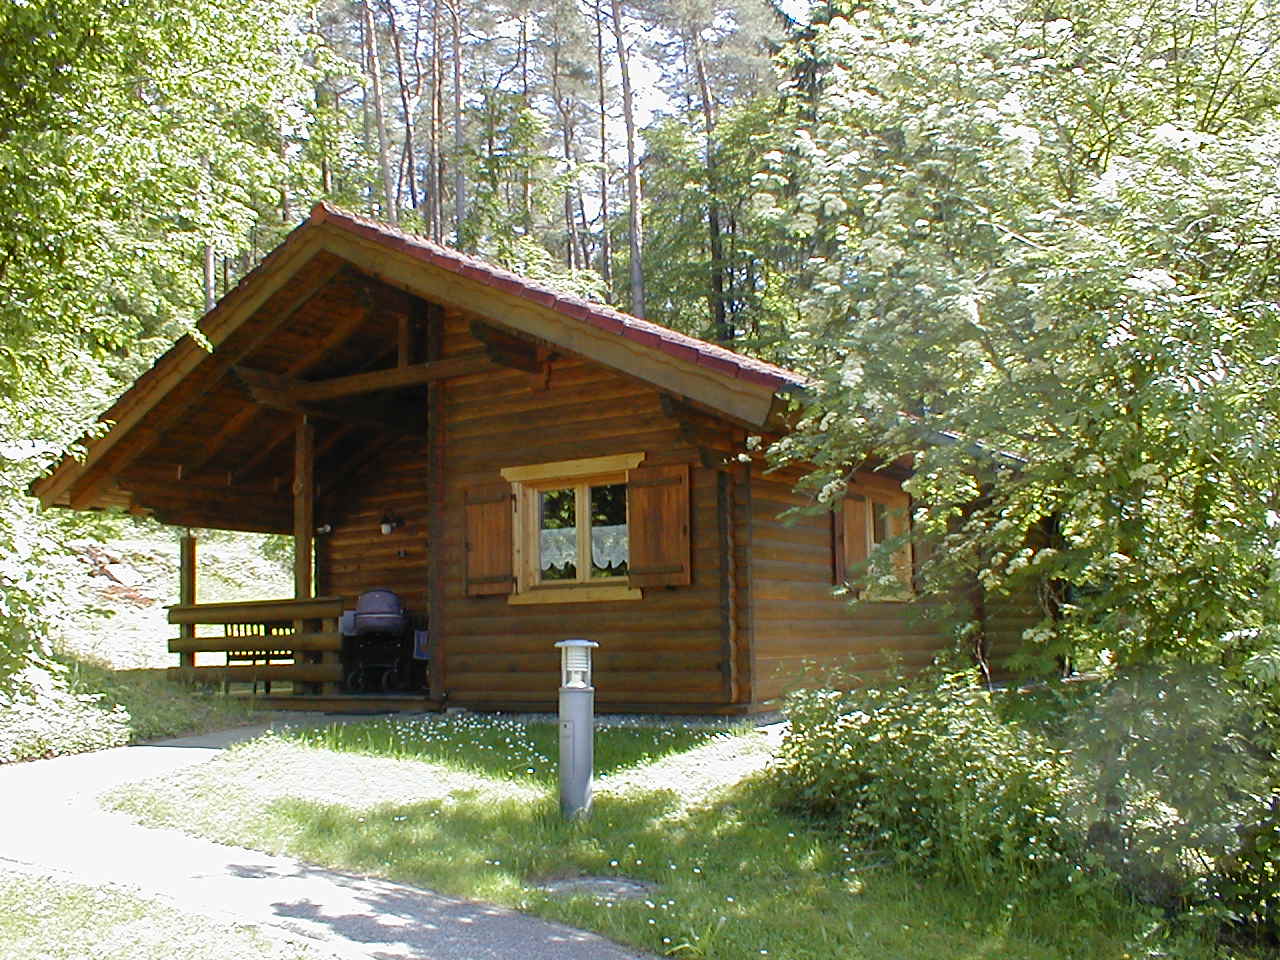 Im Mai 2020 inmitten der blühenden Wiese / Hütte in Stamsried / Bayerischer Wald